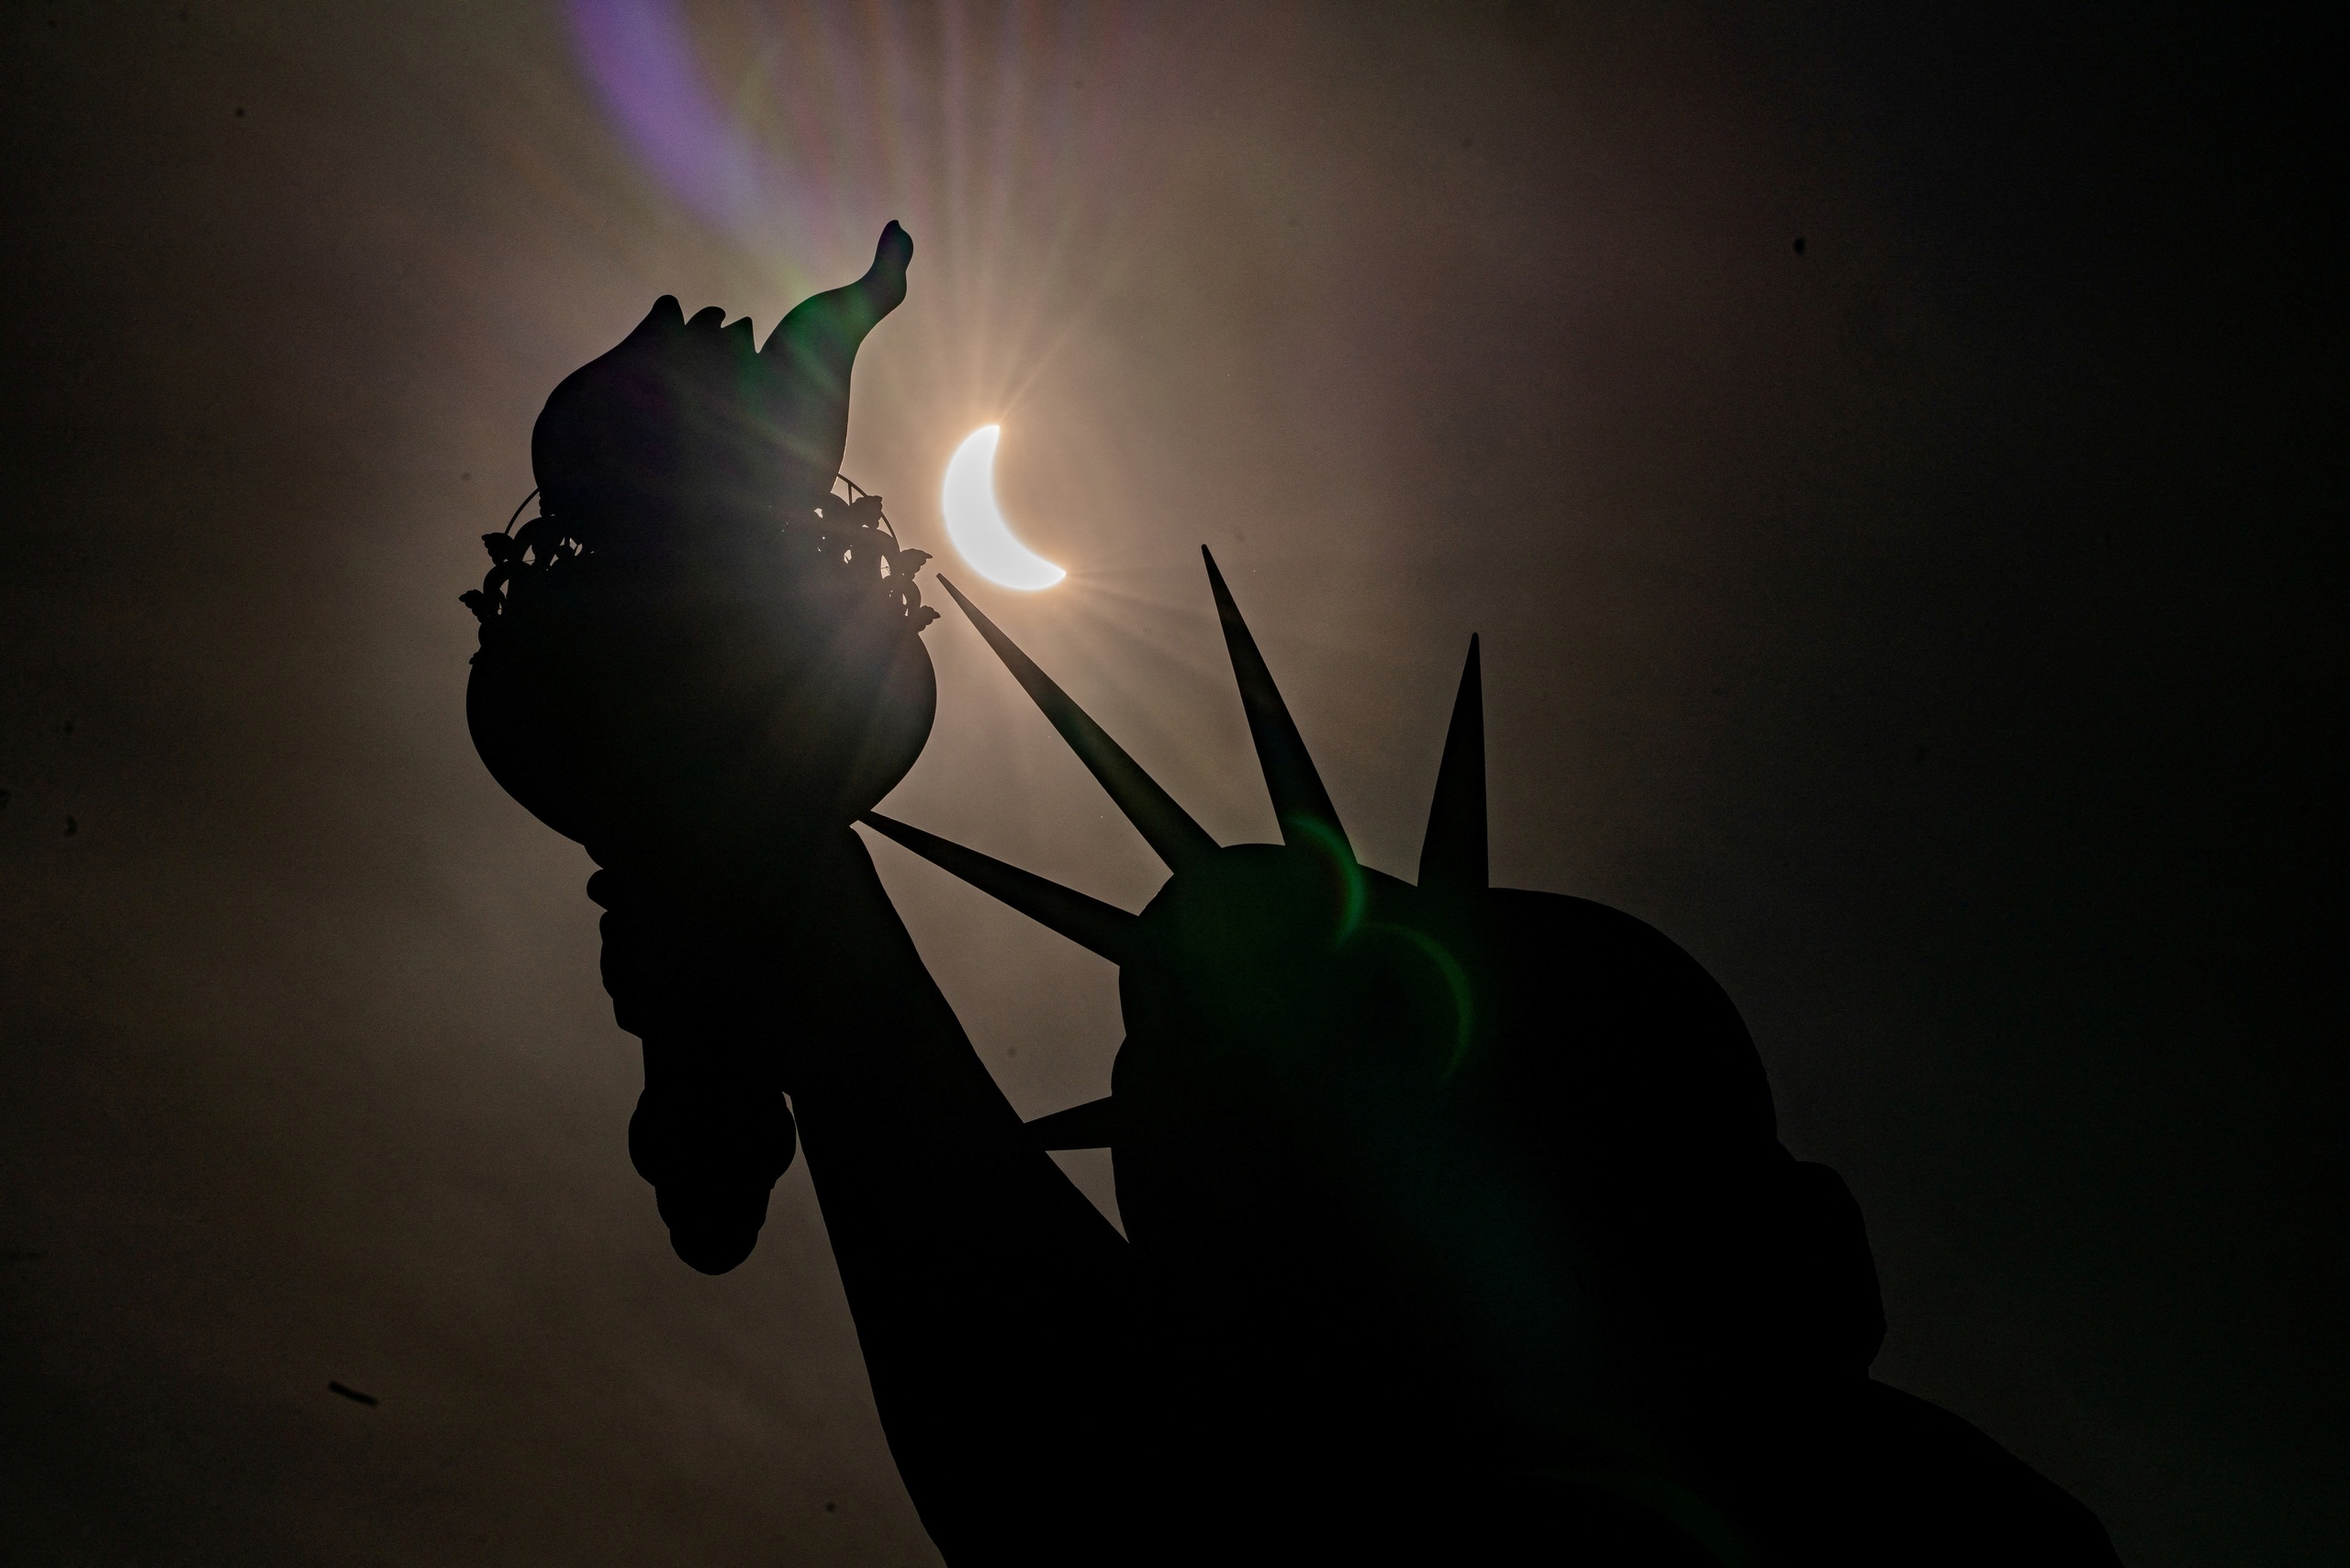 Mặt trăng che gần hết mặt trời trong hình ảnh được chụp gần tượng Nữ thần Tự do tại New York (Mỹ)